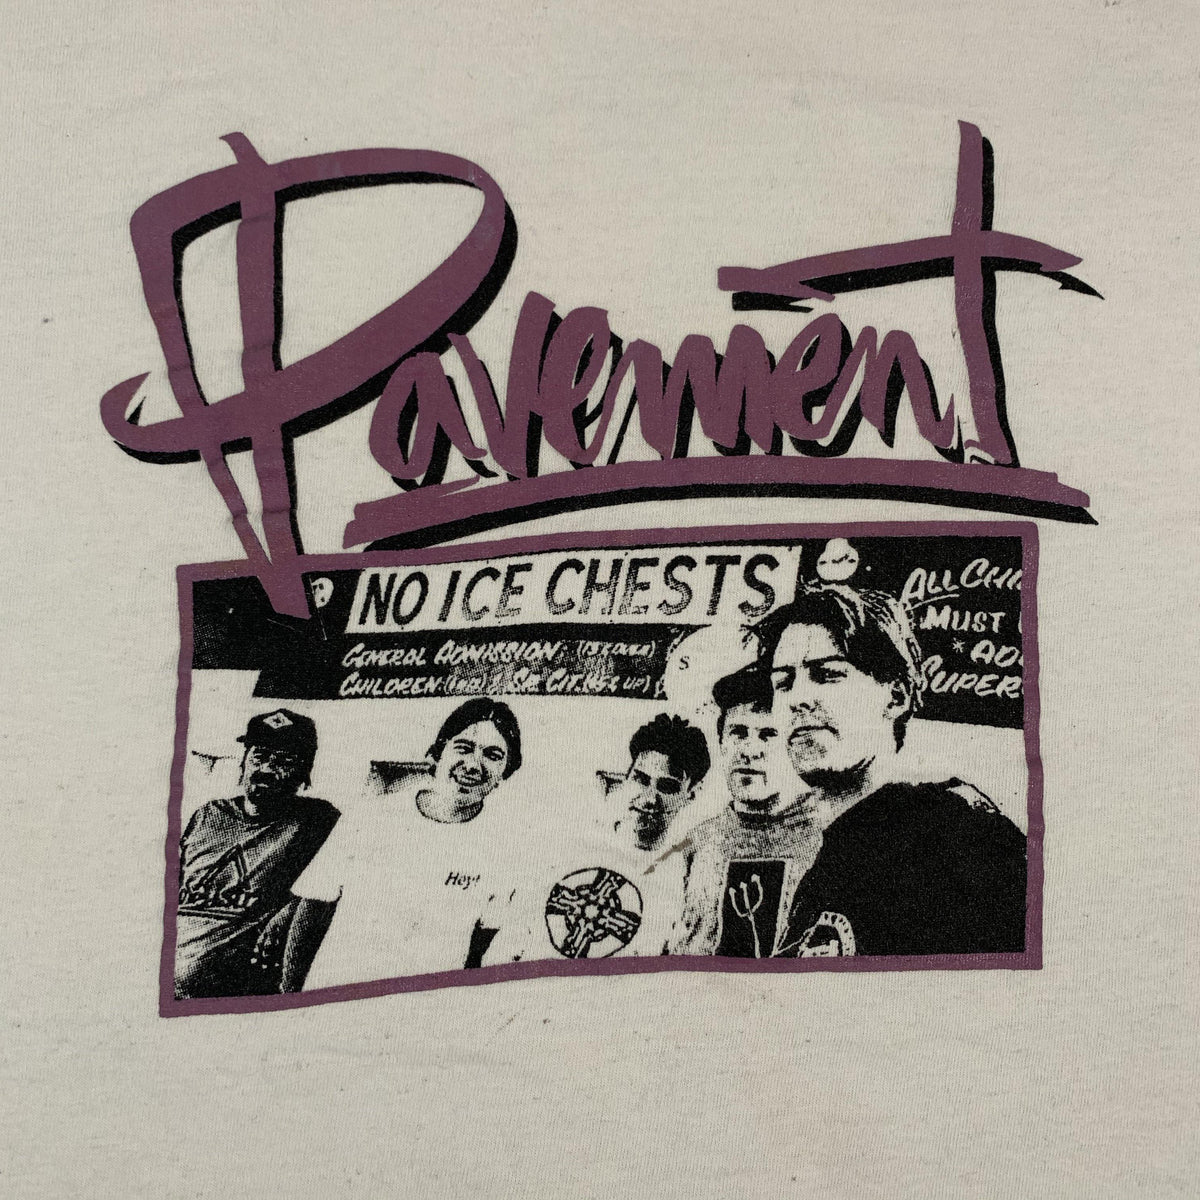 Vintage Pavement &quot;Group Photo&quot; T-Shirt - jointcustodydc